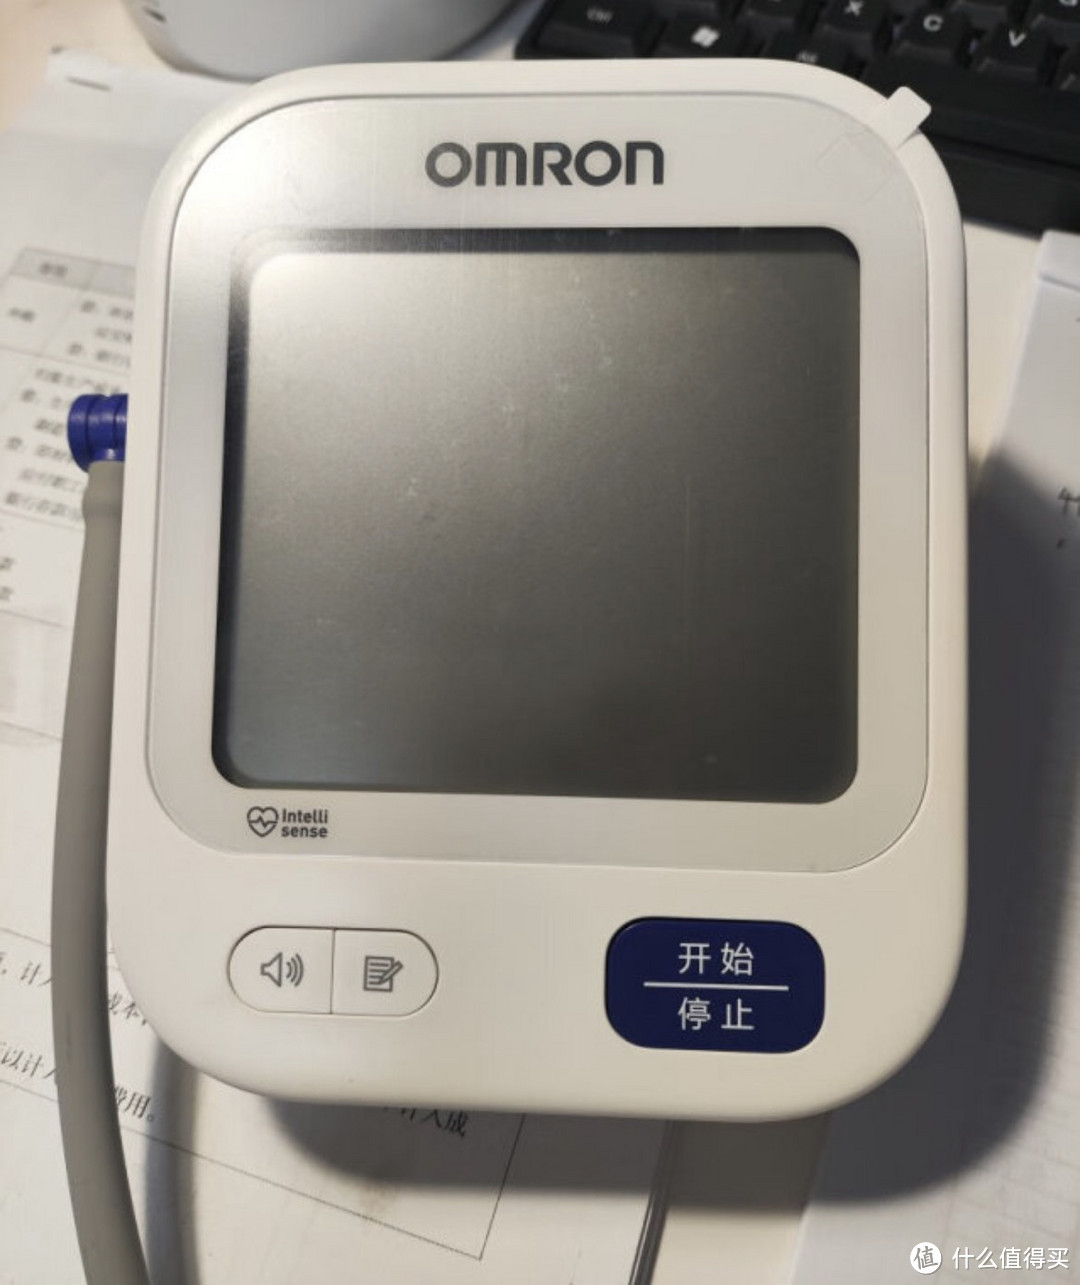 欧姆龙电子血压计U726J：家用健康监测的新选择